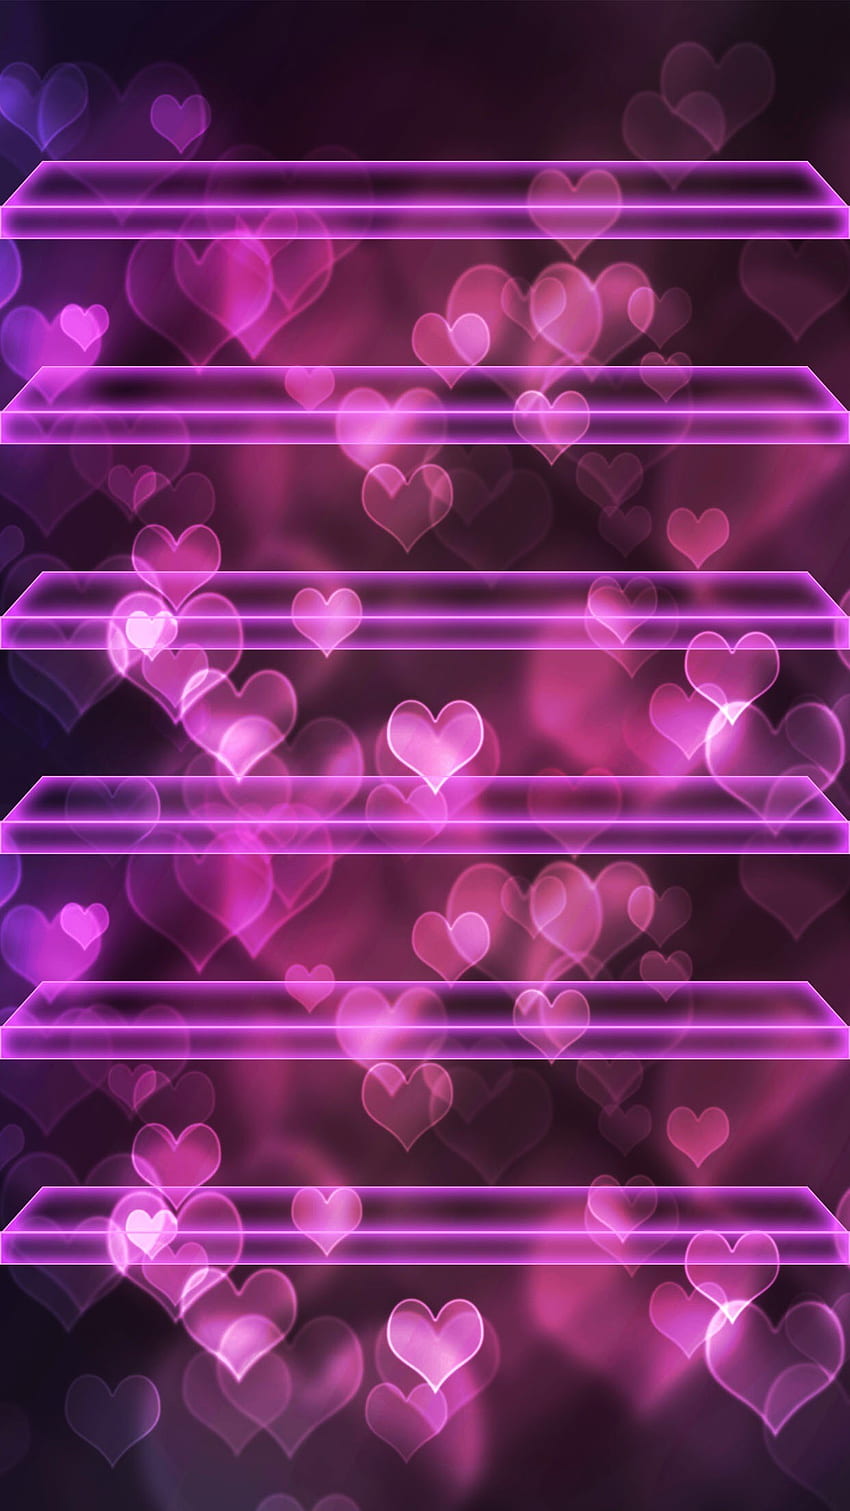 ââTAP DAN DAPATKAN APLIKASINYA! Rak Hati Bokeh Pink Neon Cinta Romantis wallpaper ponsel HD